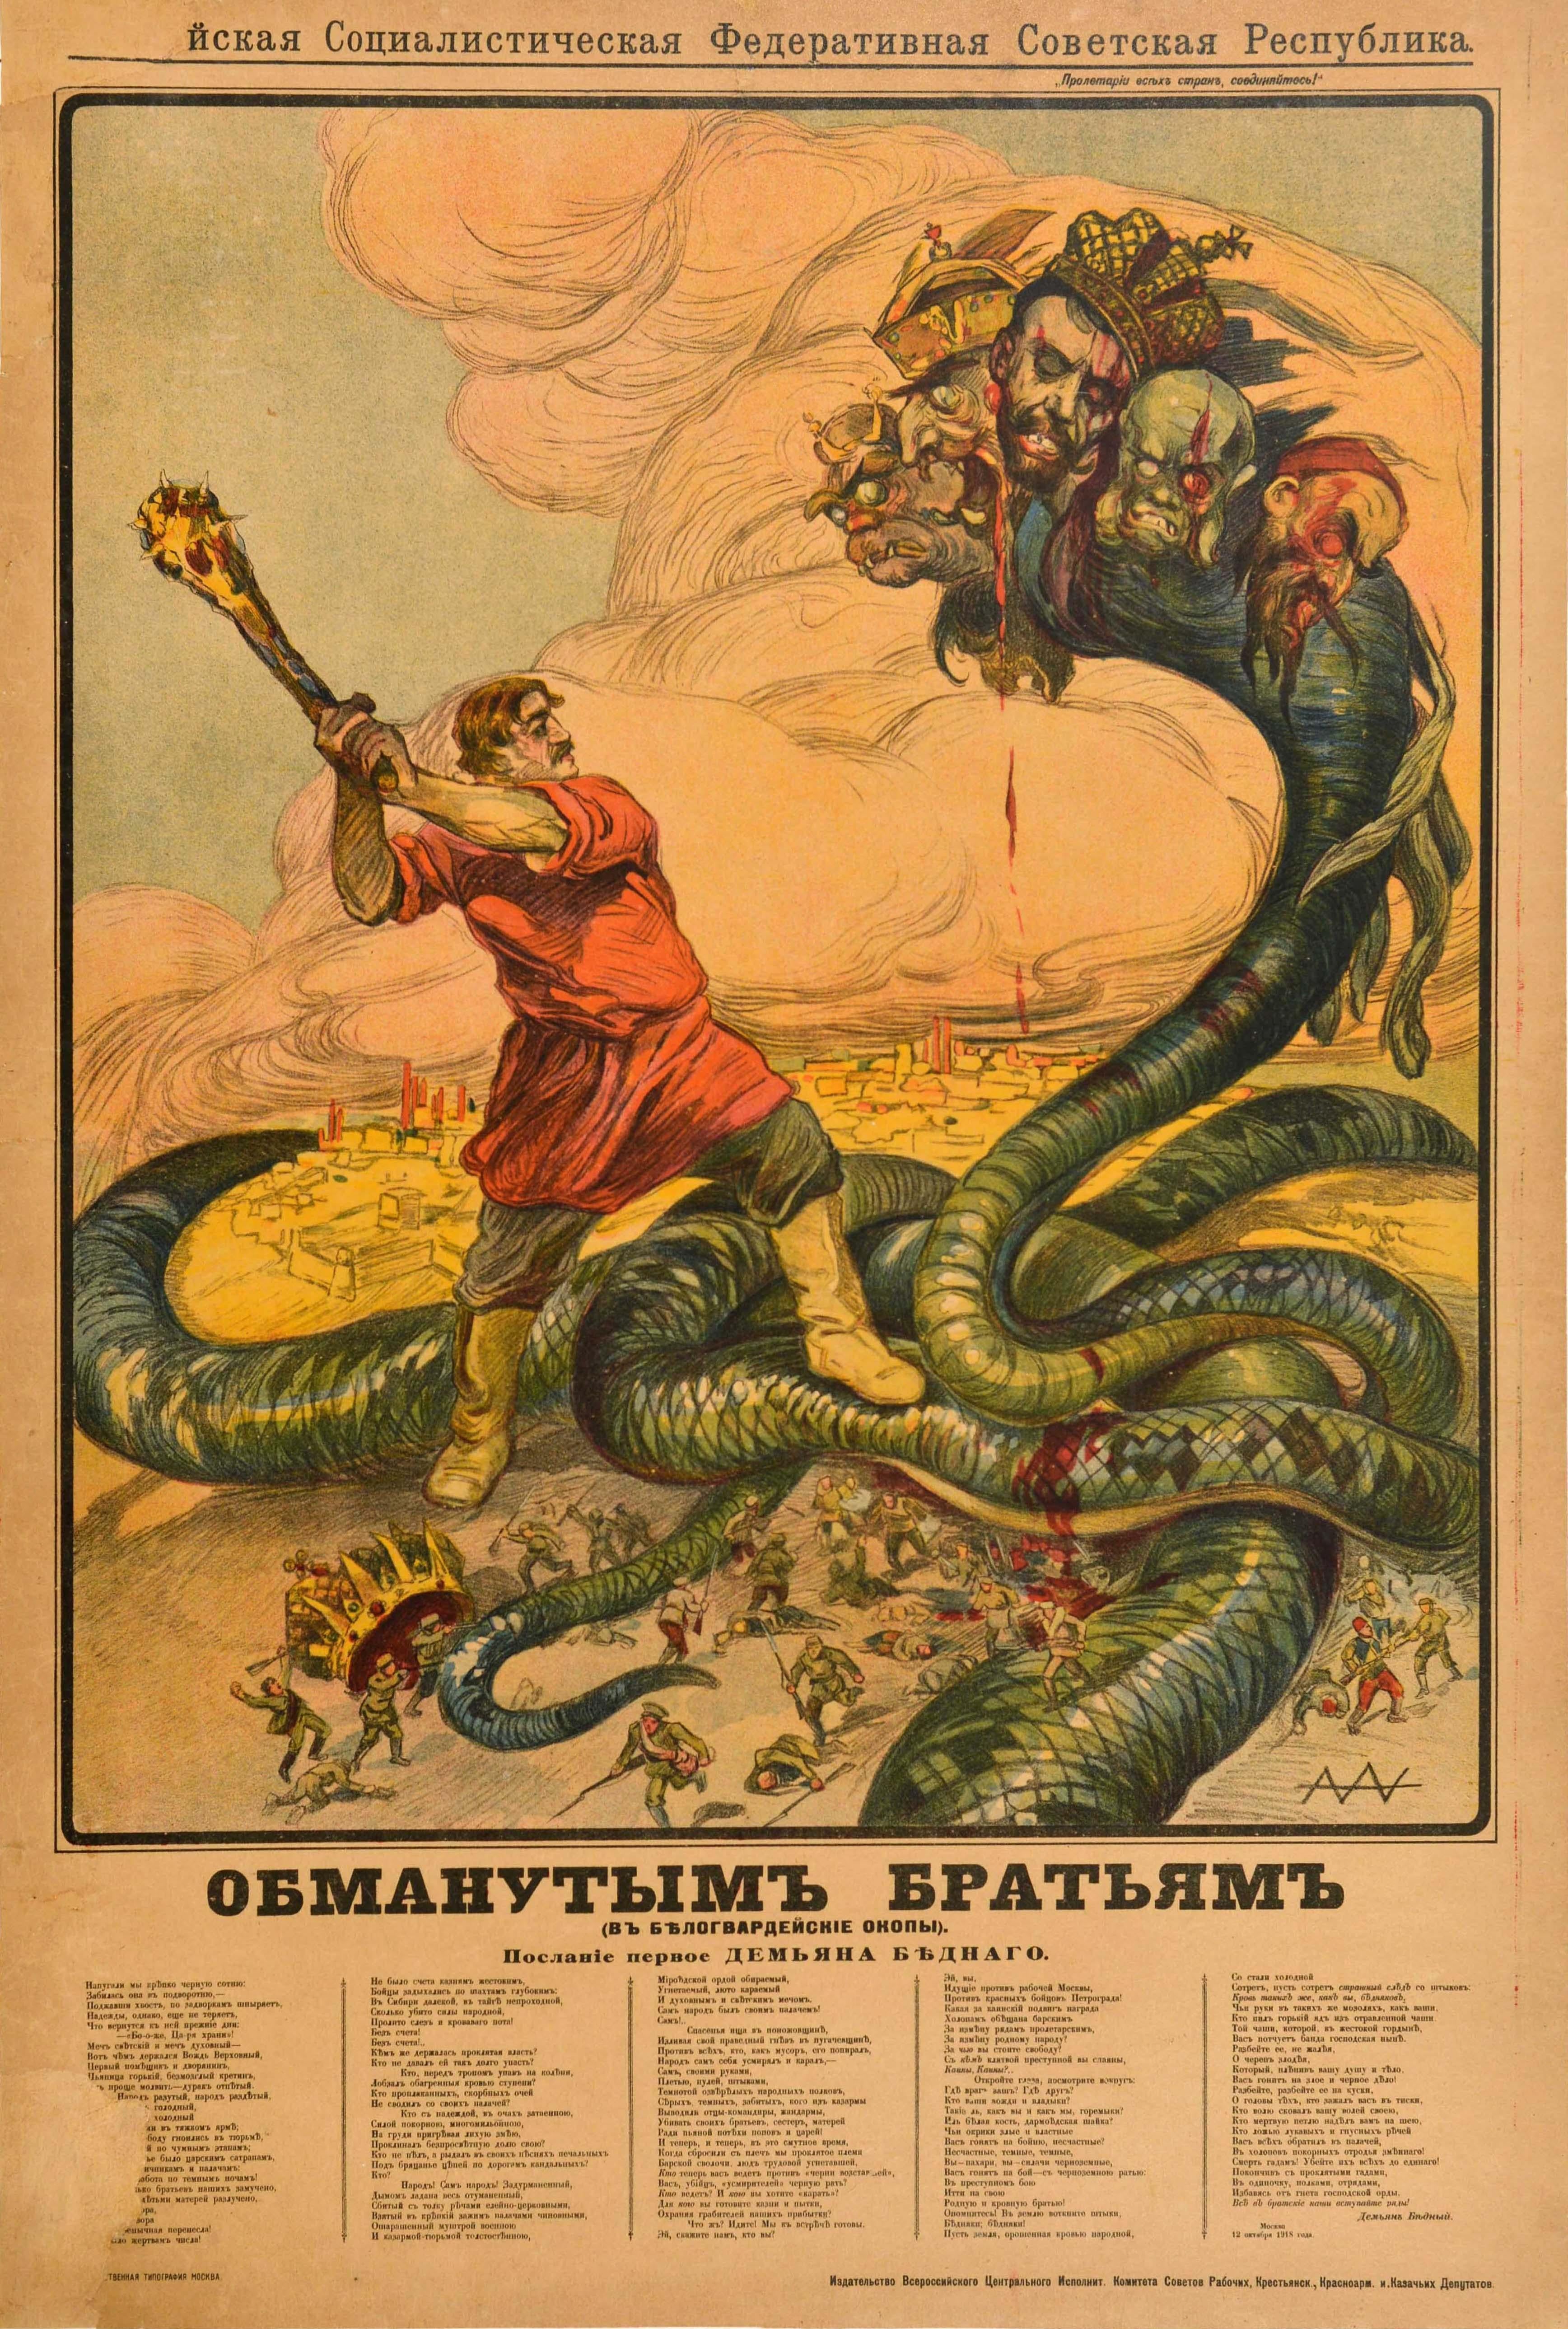 Alexander Apsit Print – Original Antikes russisches Anti- Tsaristisches Bürgerkriegsplakat, Deceived Brothers Apsit, antik